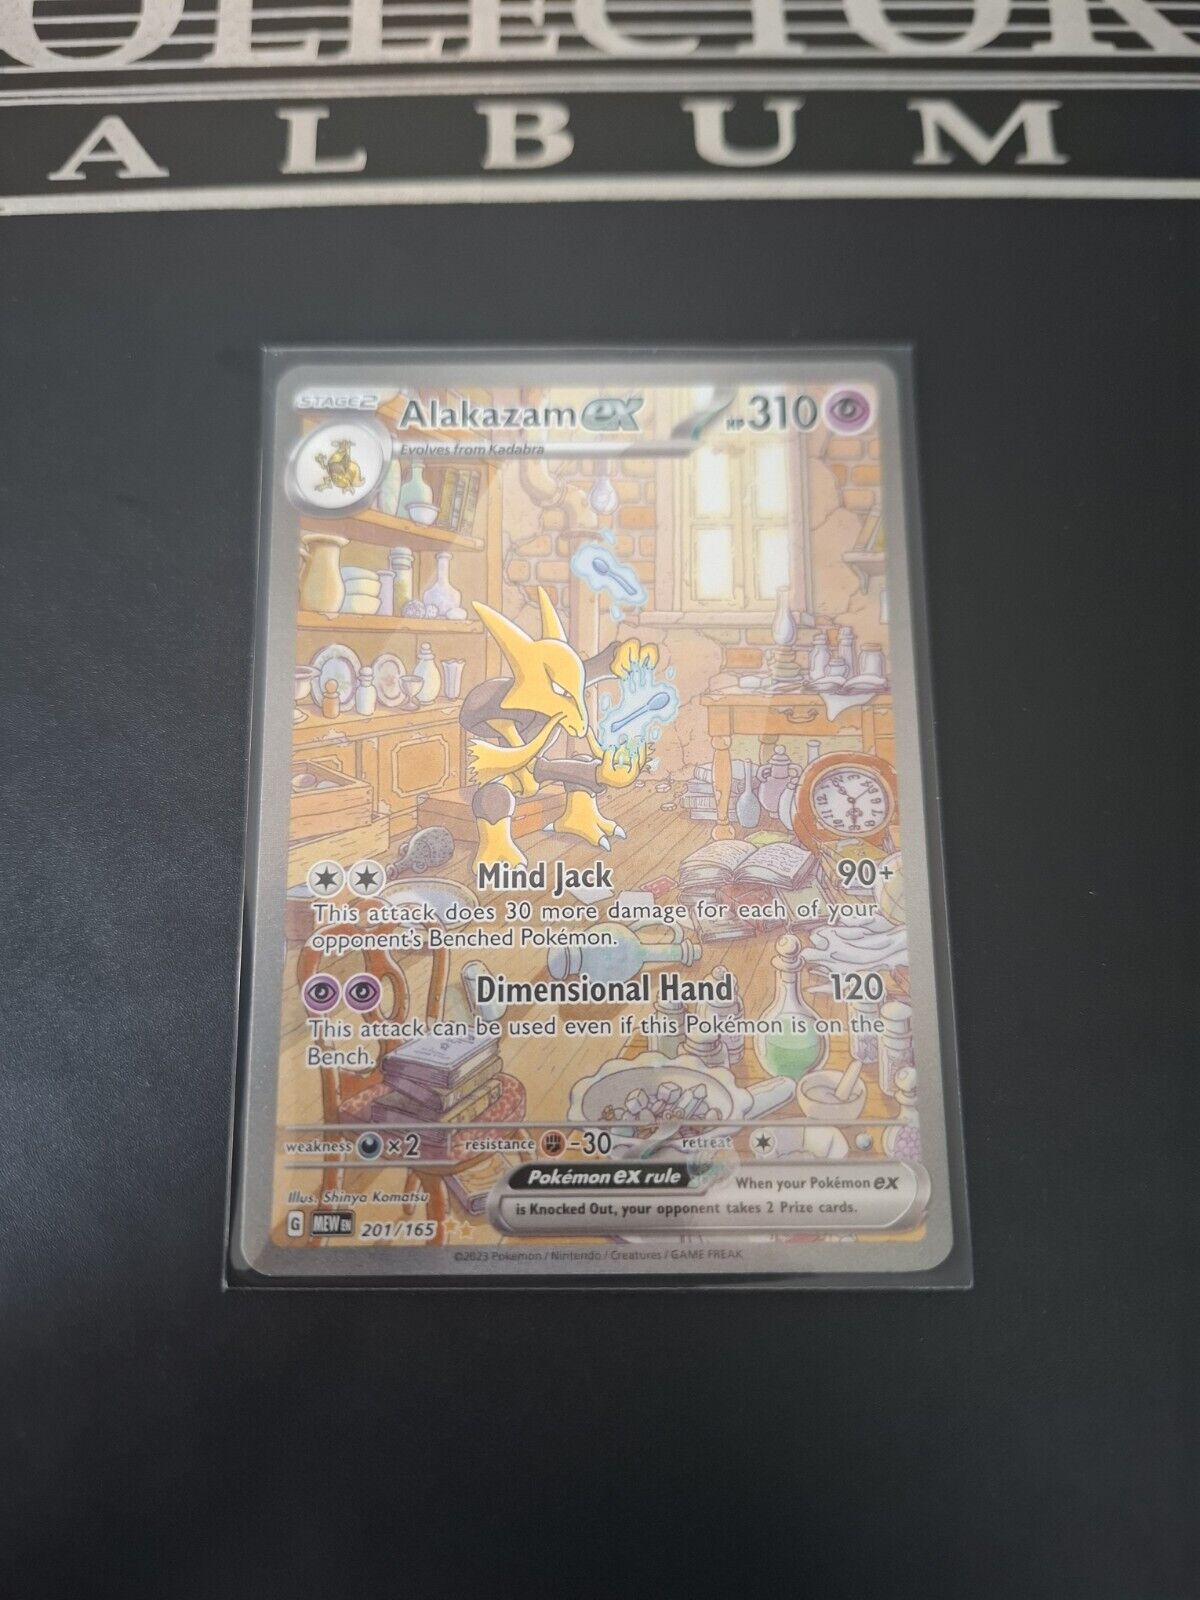 Alakazam EX Pokemon S&V 151 201/165 Illustration Alt Art Rare Card